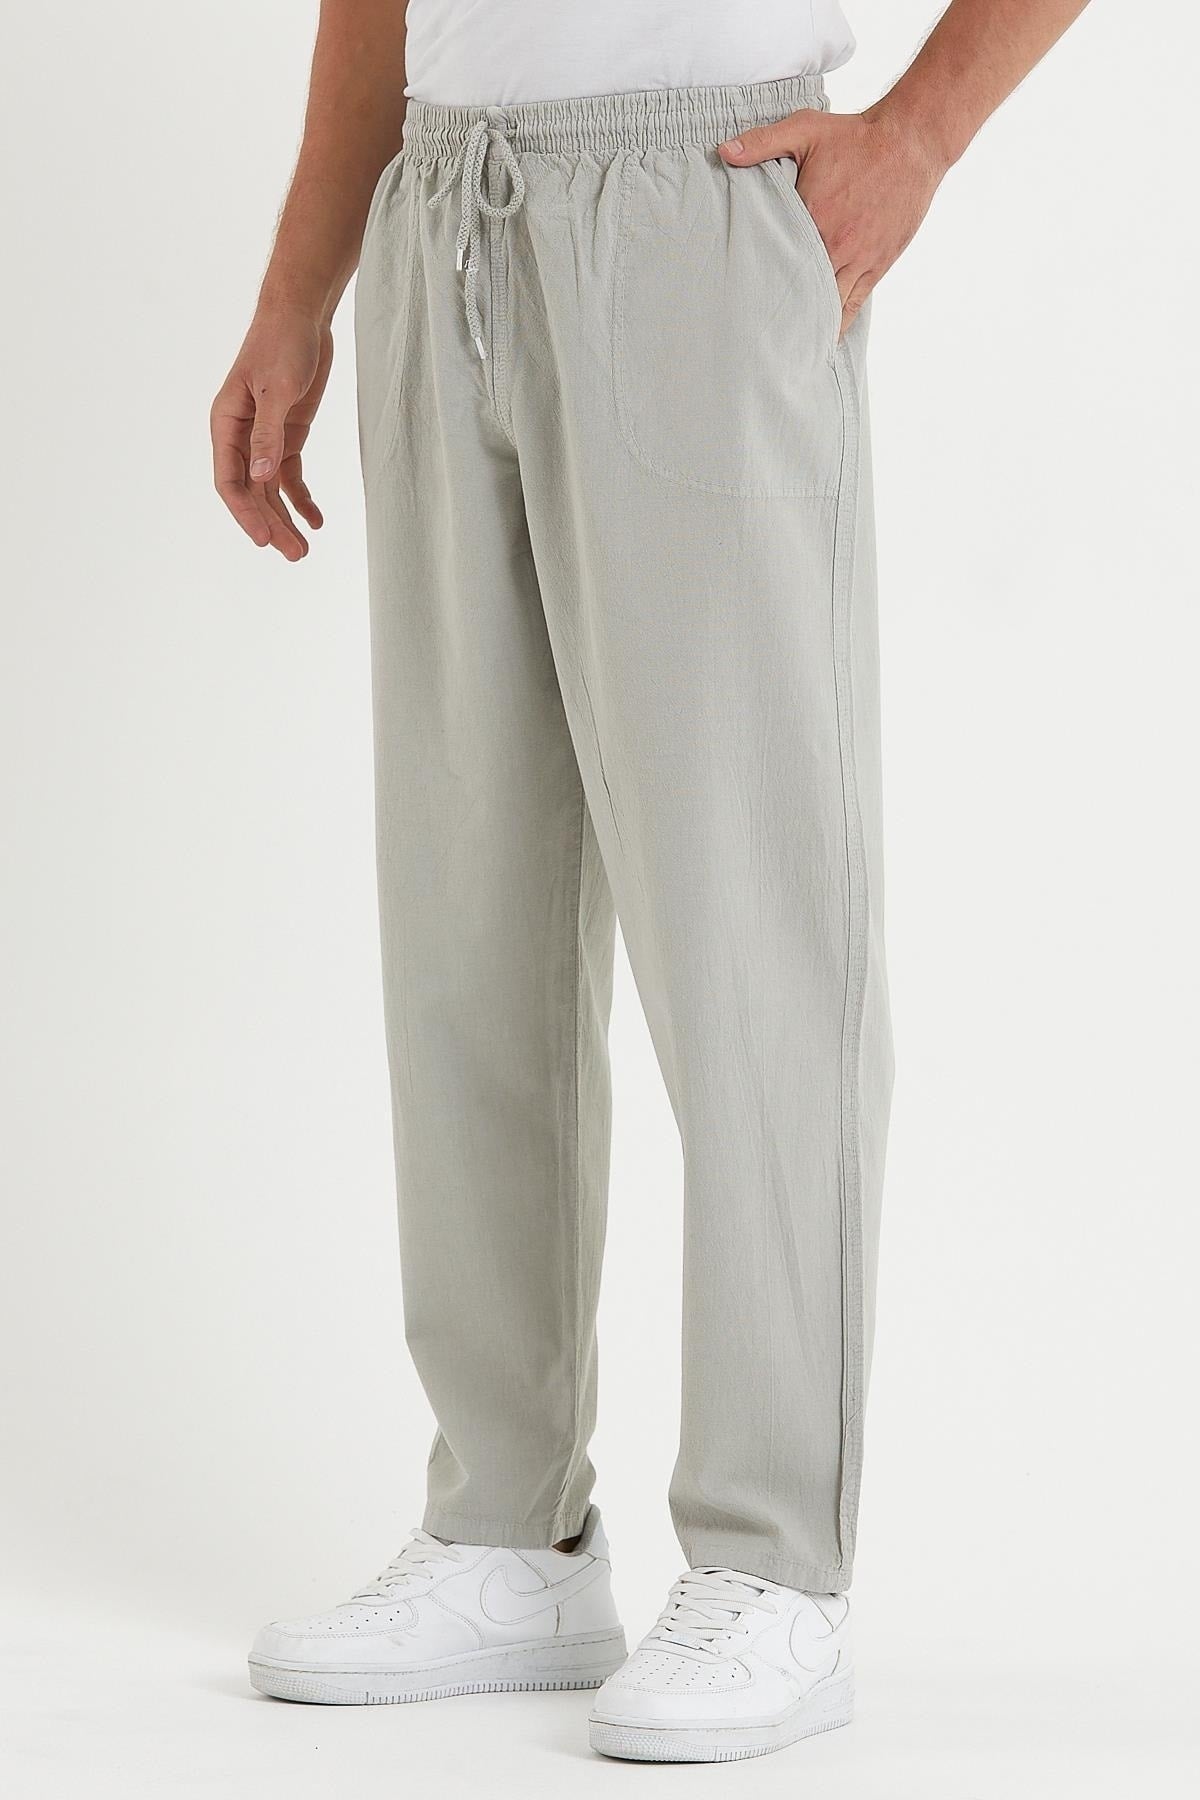 Men's Gray Color Linen Trousers